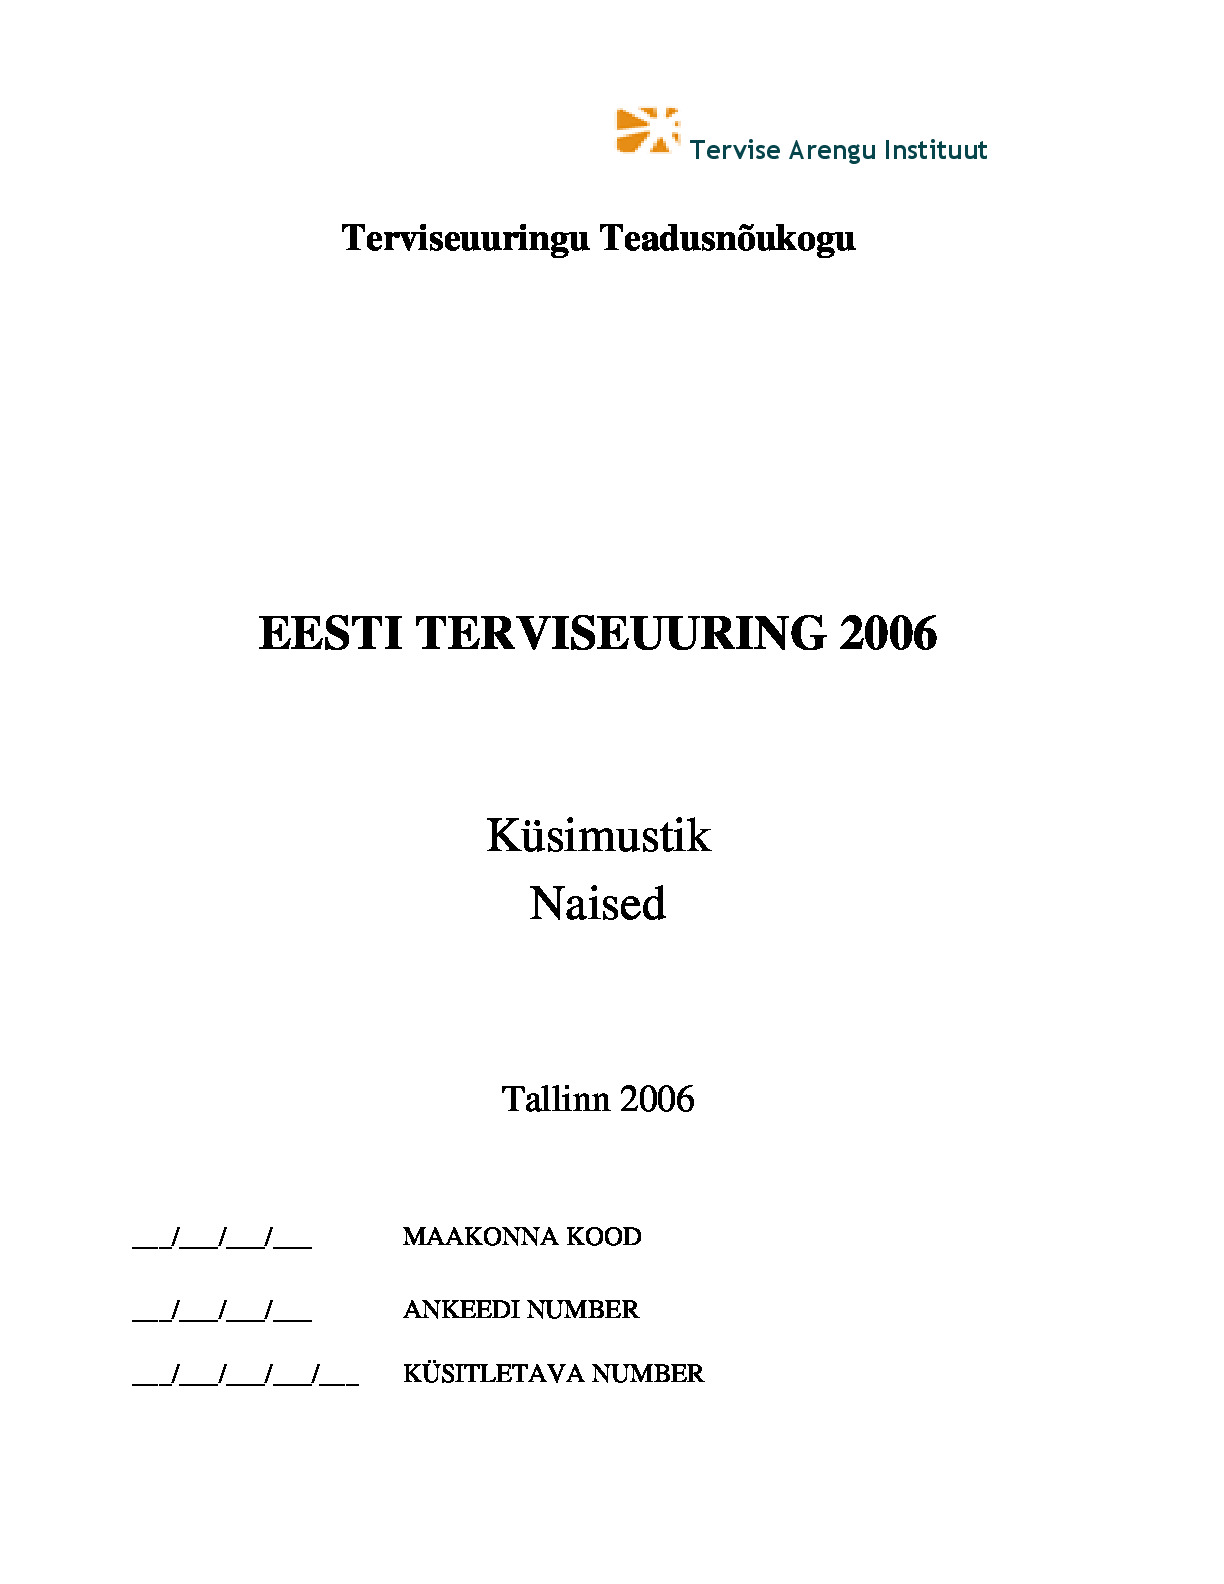 Eesti Terviseuuring 2006 naiste ankeet